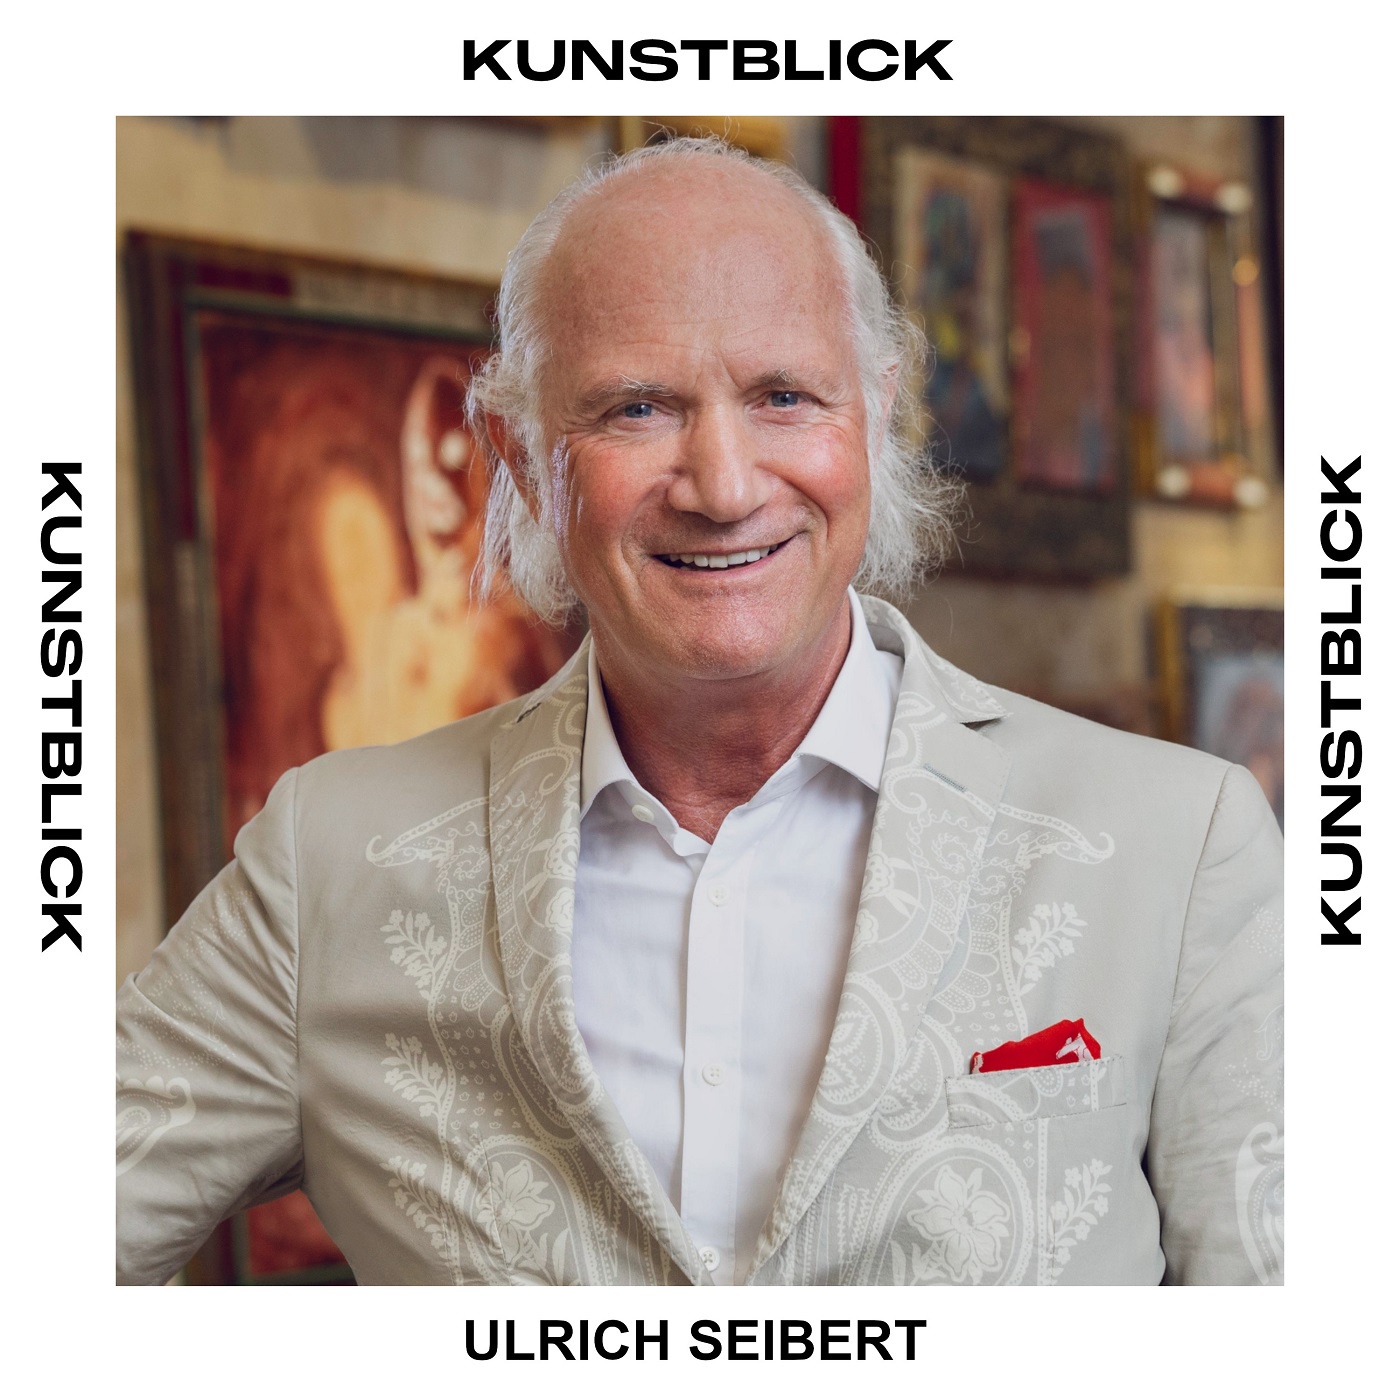 Ulrich Seibert - Jurist, Honorarprofessor für Wirtschaftsrecht und Kunstsammler